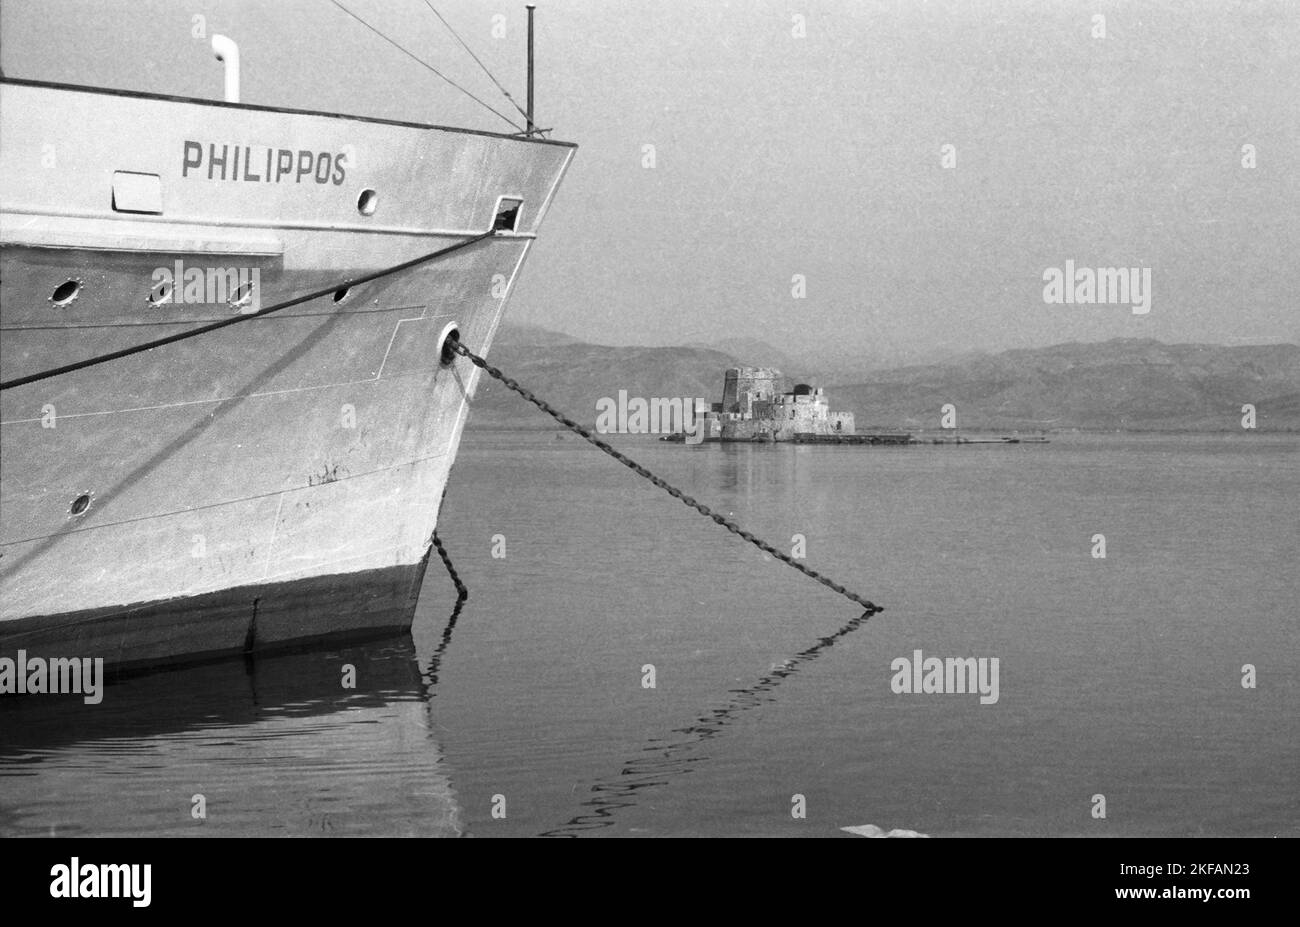 Das Schiff Philippos liegt vor einer kleinen Burginsel vor Anker, Griechenland 1950er Jahre. The vessel Philippos anchoring at a small island with a castle, Greece, 1950s. Stock Photo